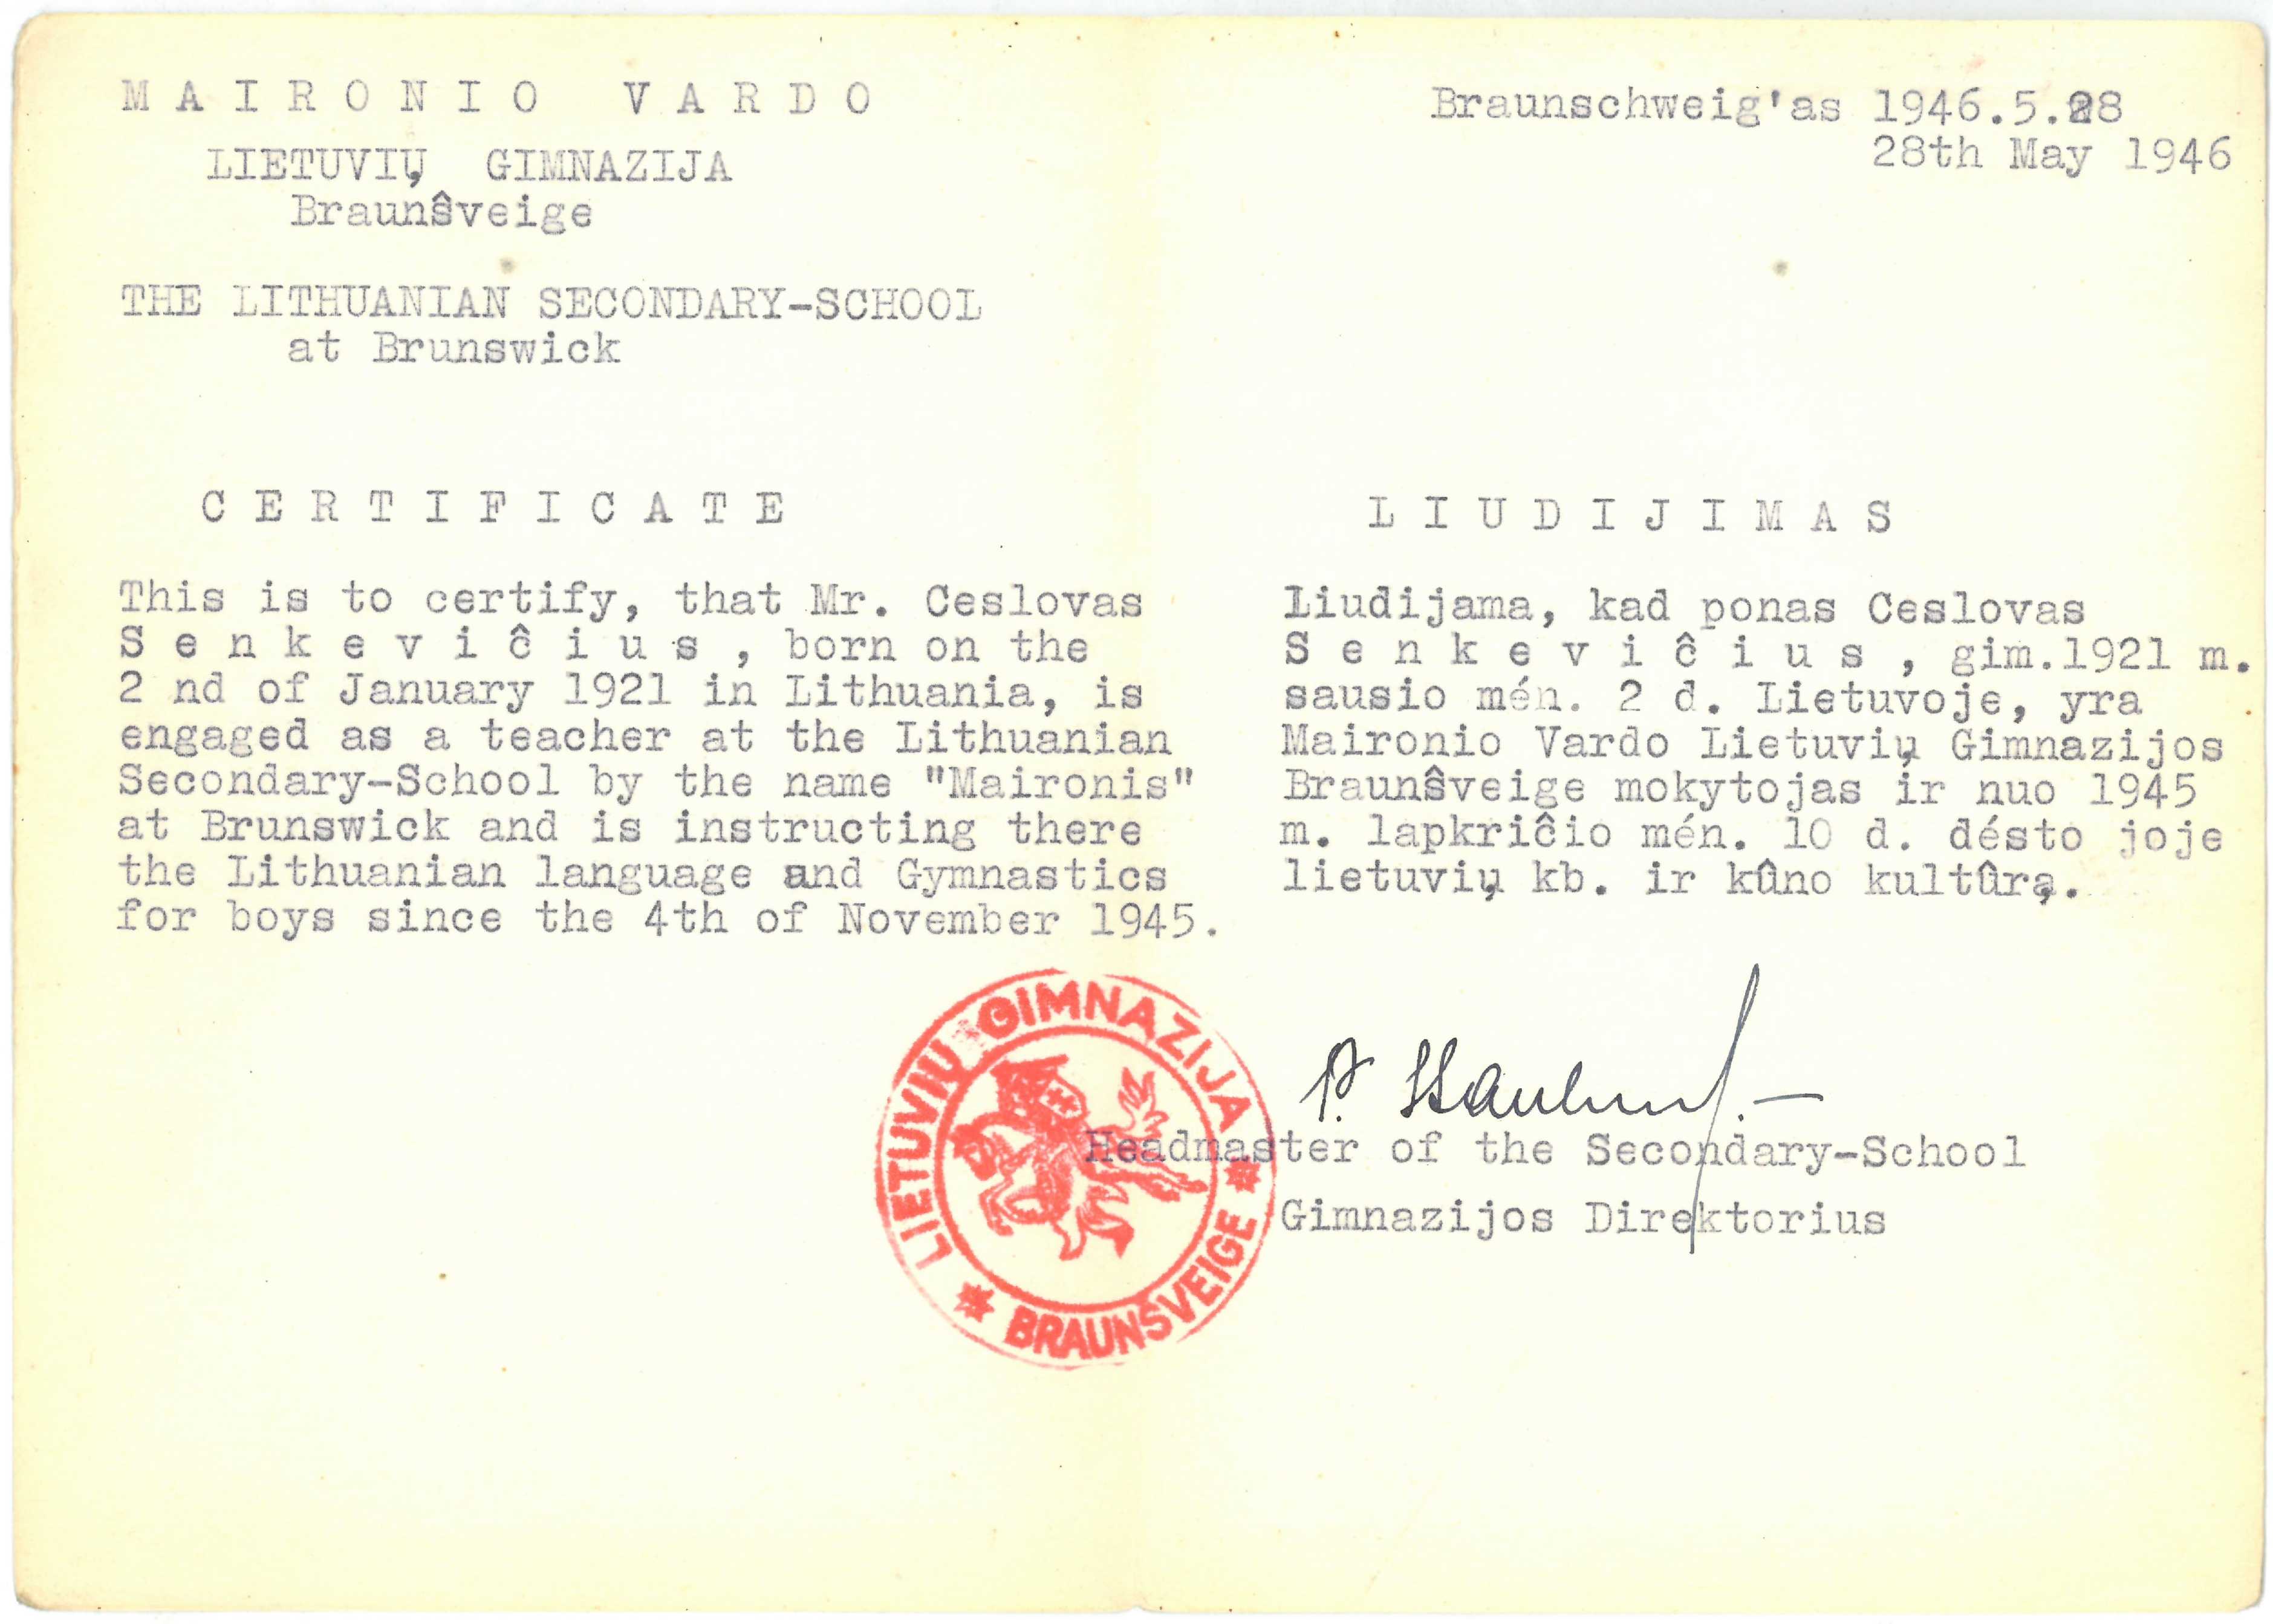 Maironio vardo lietuvių gimnazijos Braunšveige liudijimas, išduotas Česlovui Senkevičiui. 1946 m. gegužės 28 d.